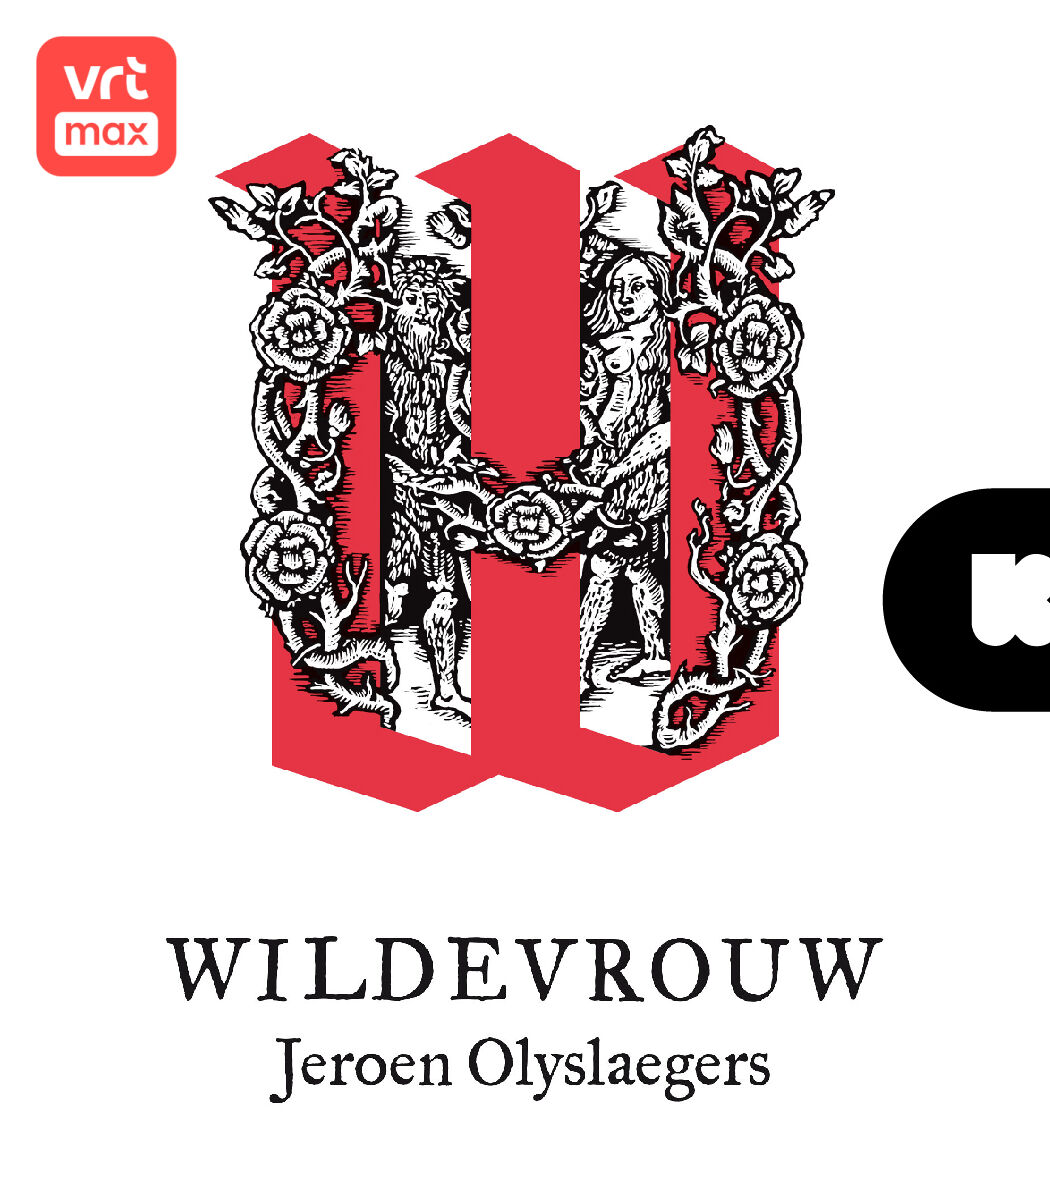 De Wereld van Wildevrouw met Jeroen Olyslaegers - Trailer